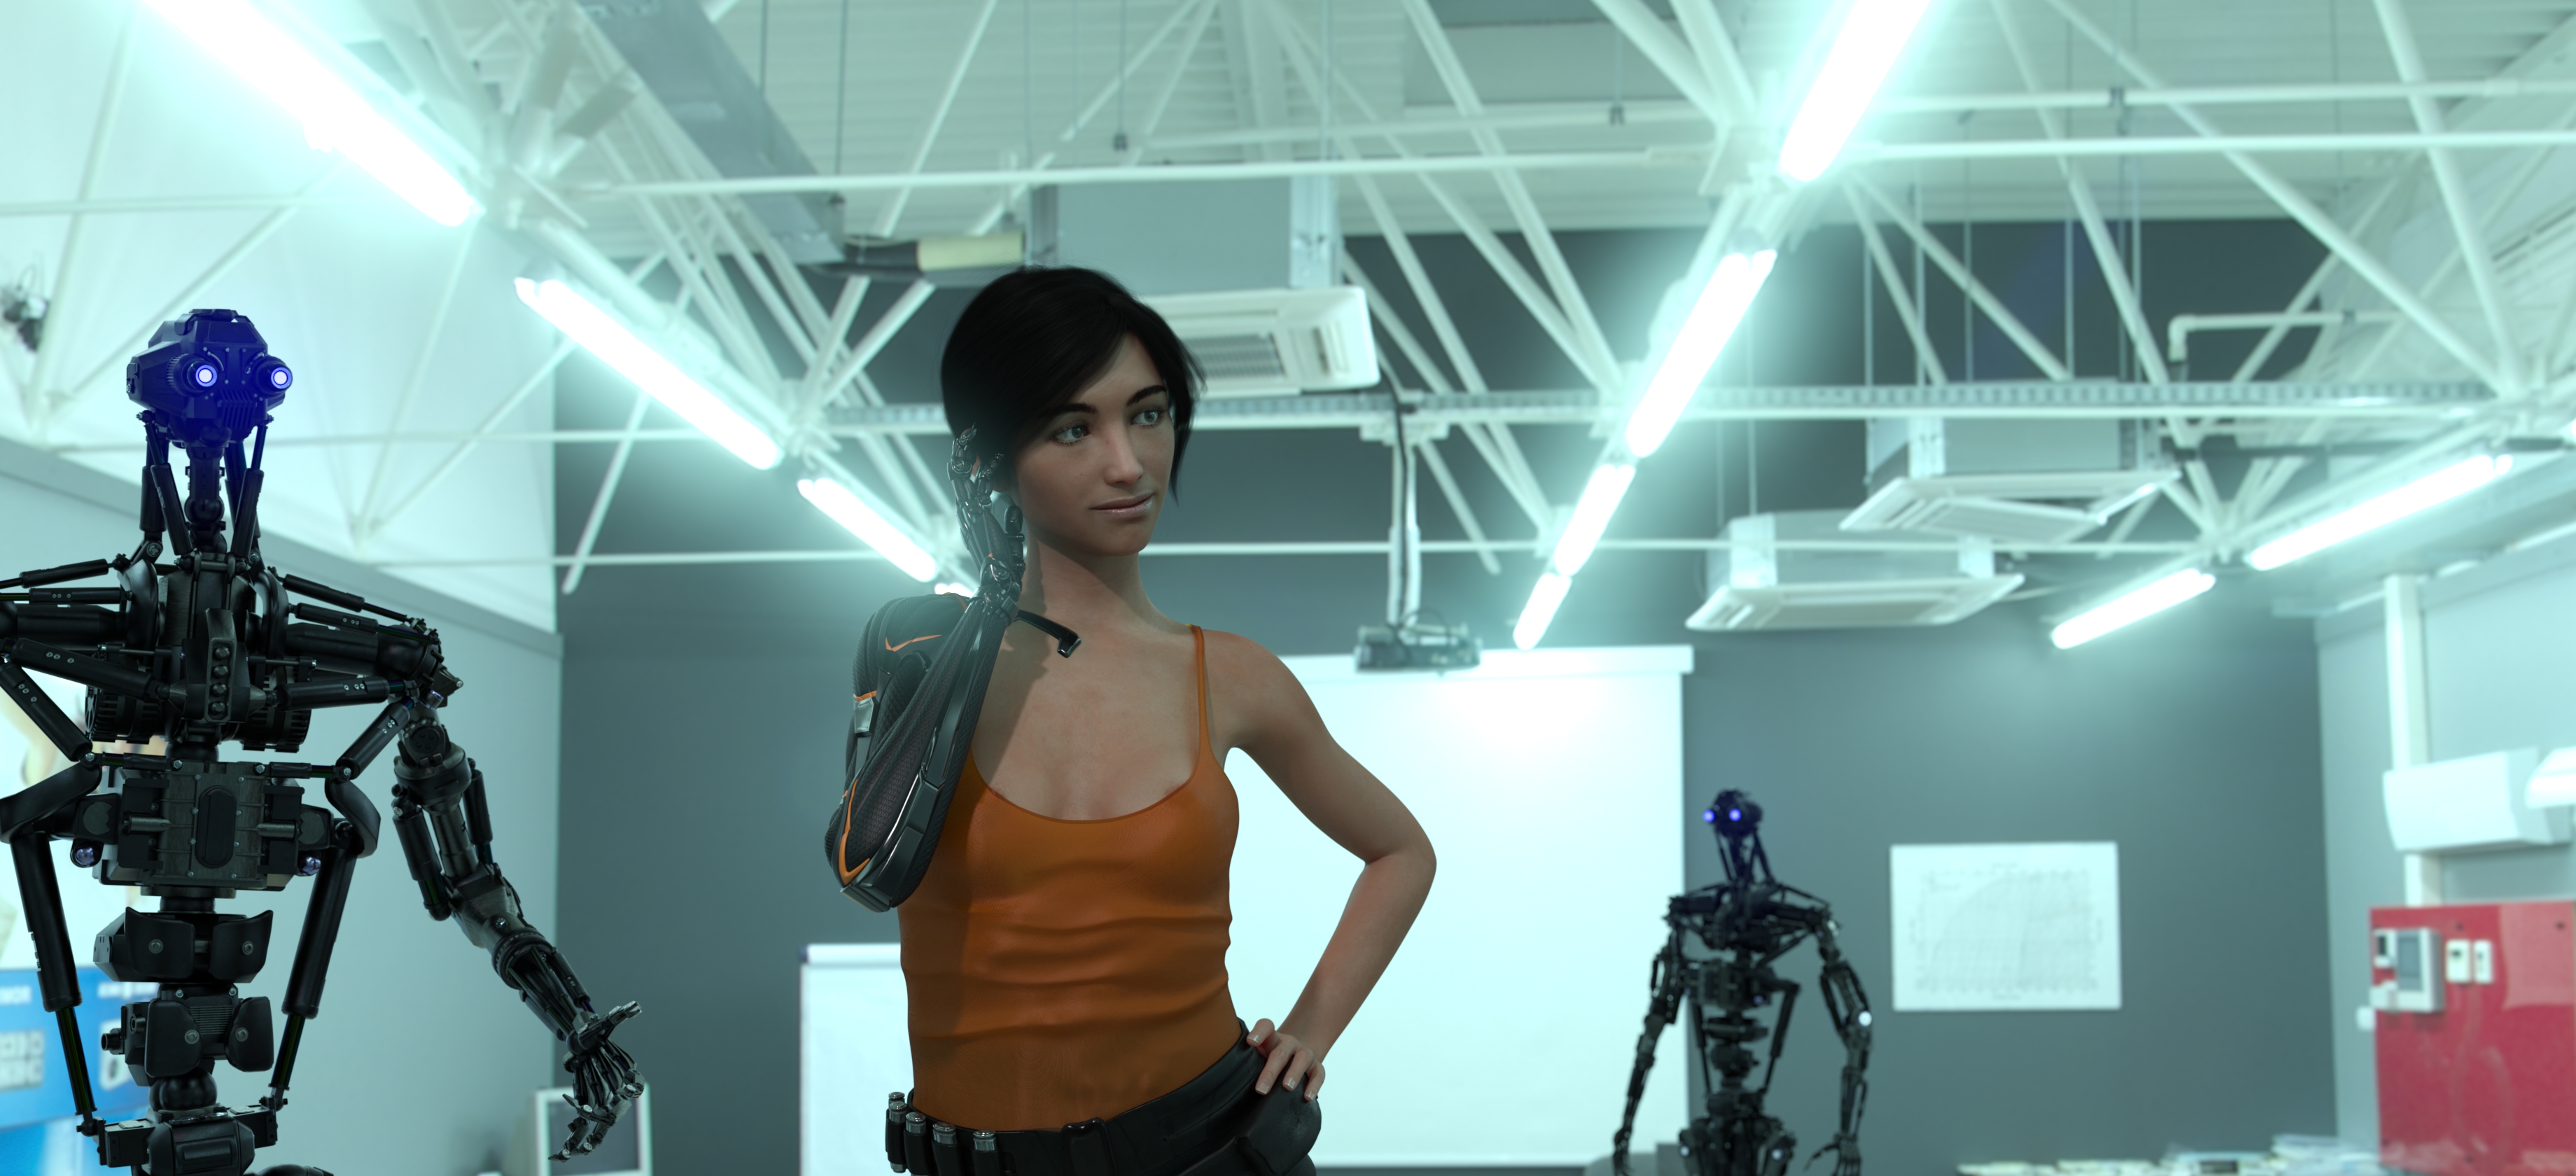 Сакира Родаун в короткометражном фильме "Кибершик" во время ориентации после восстановления с роботами-инструкторами.